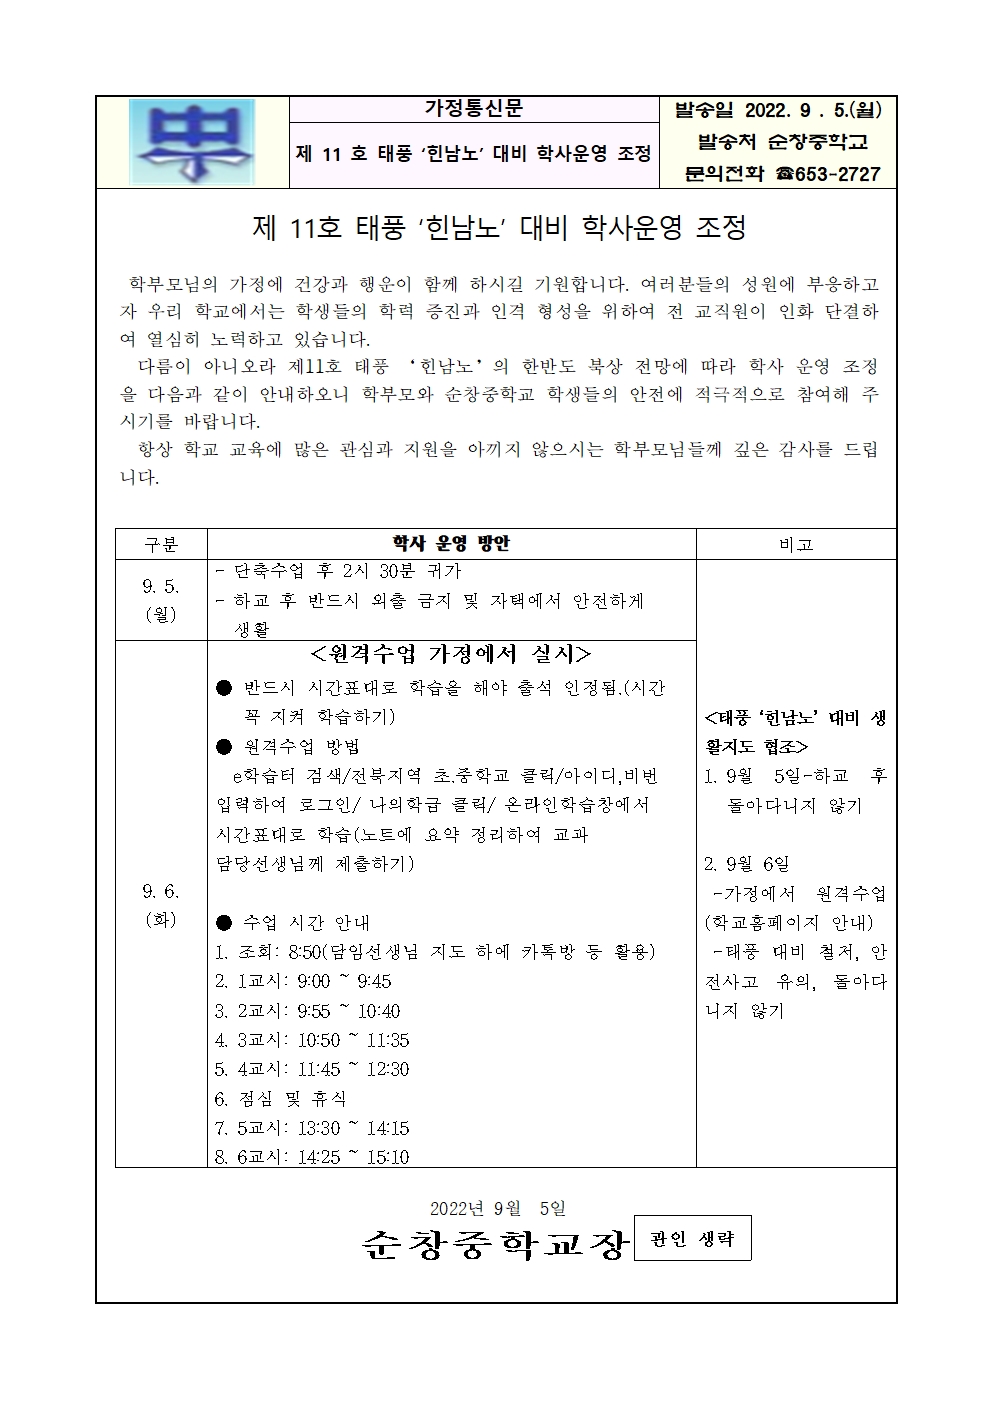 태풍 '힌남노' 대비 학사 운영 조정 안내 가정 통신문(9.5)001